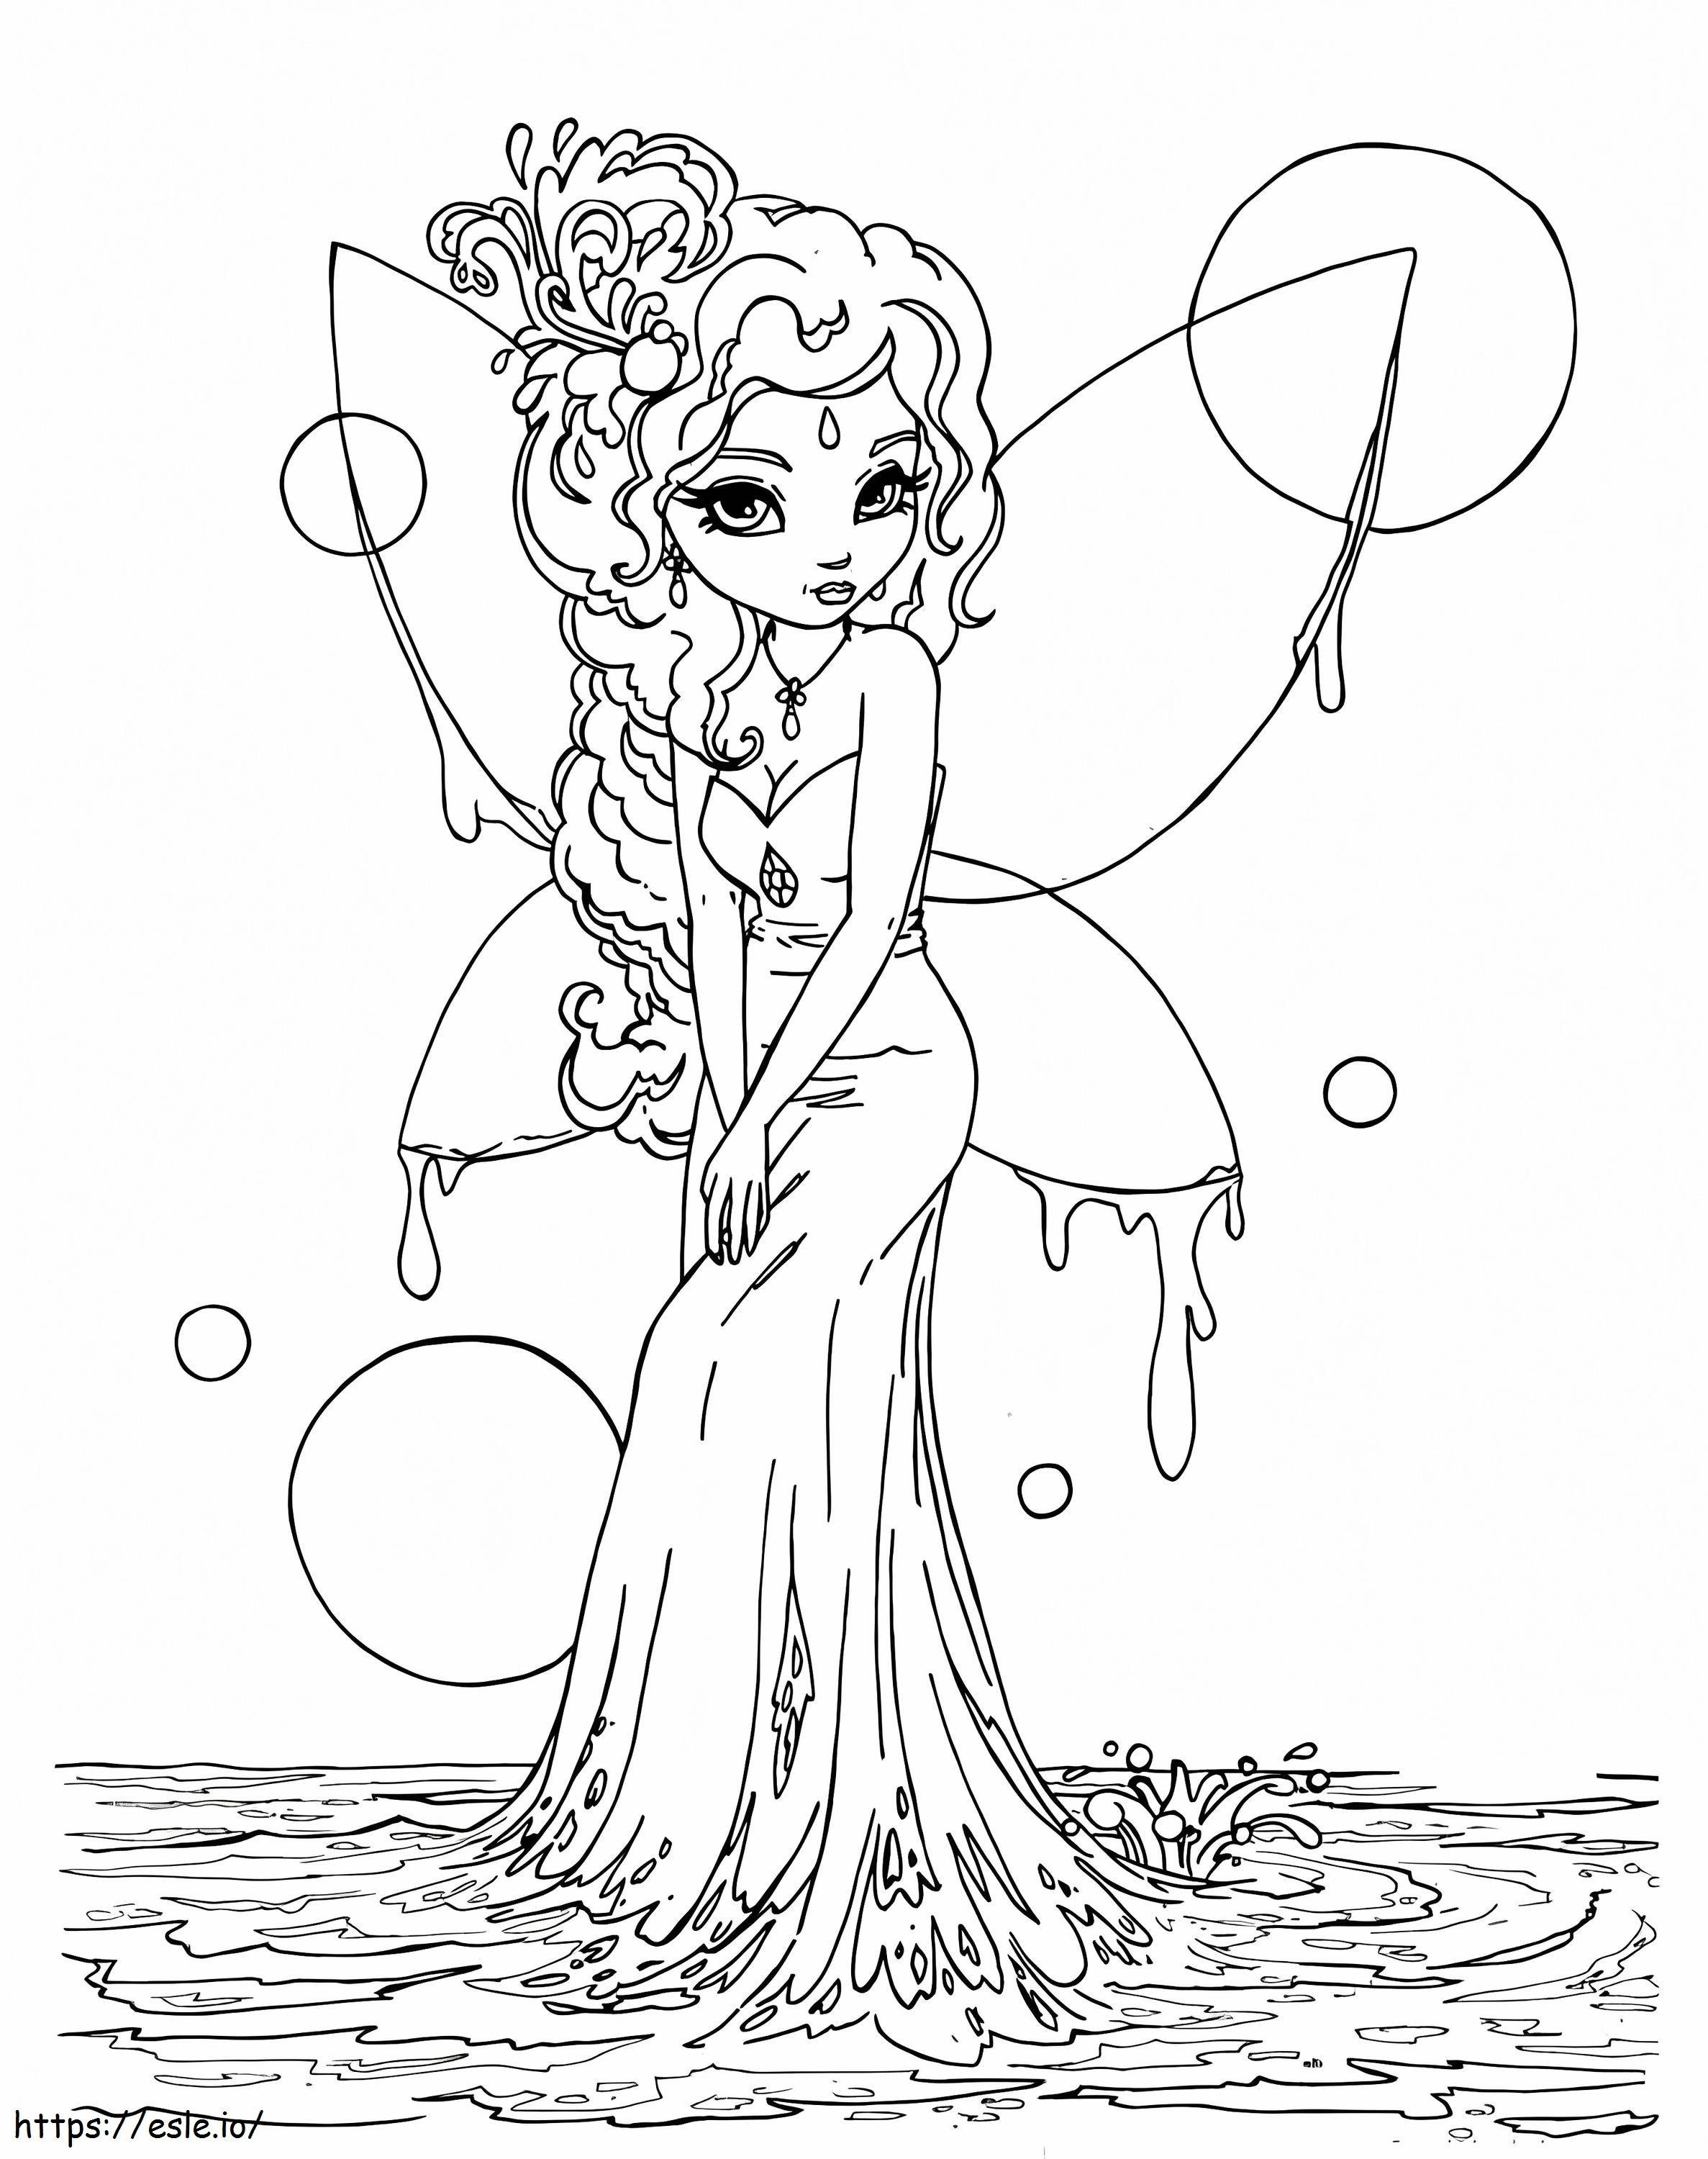 Fantasy Fairy 1 coloring page